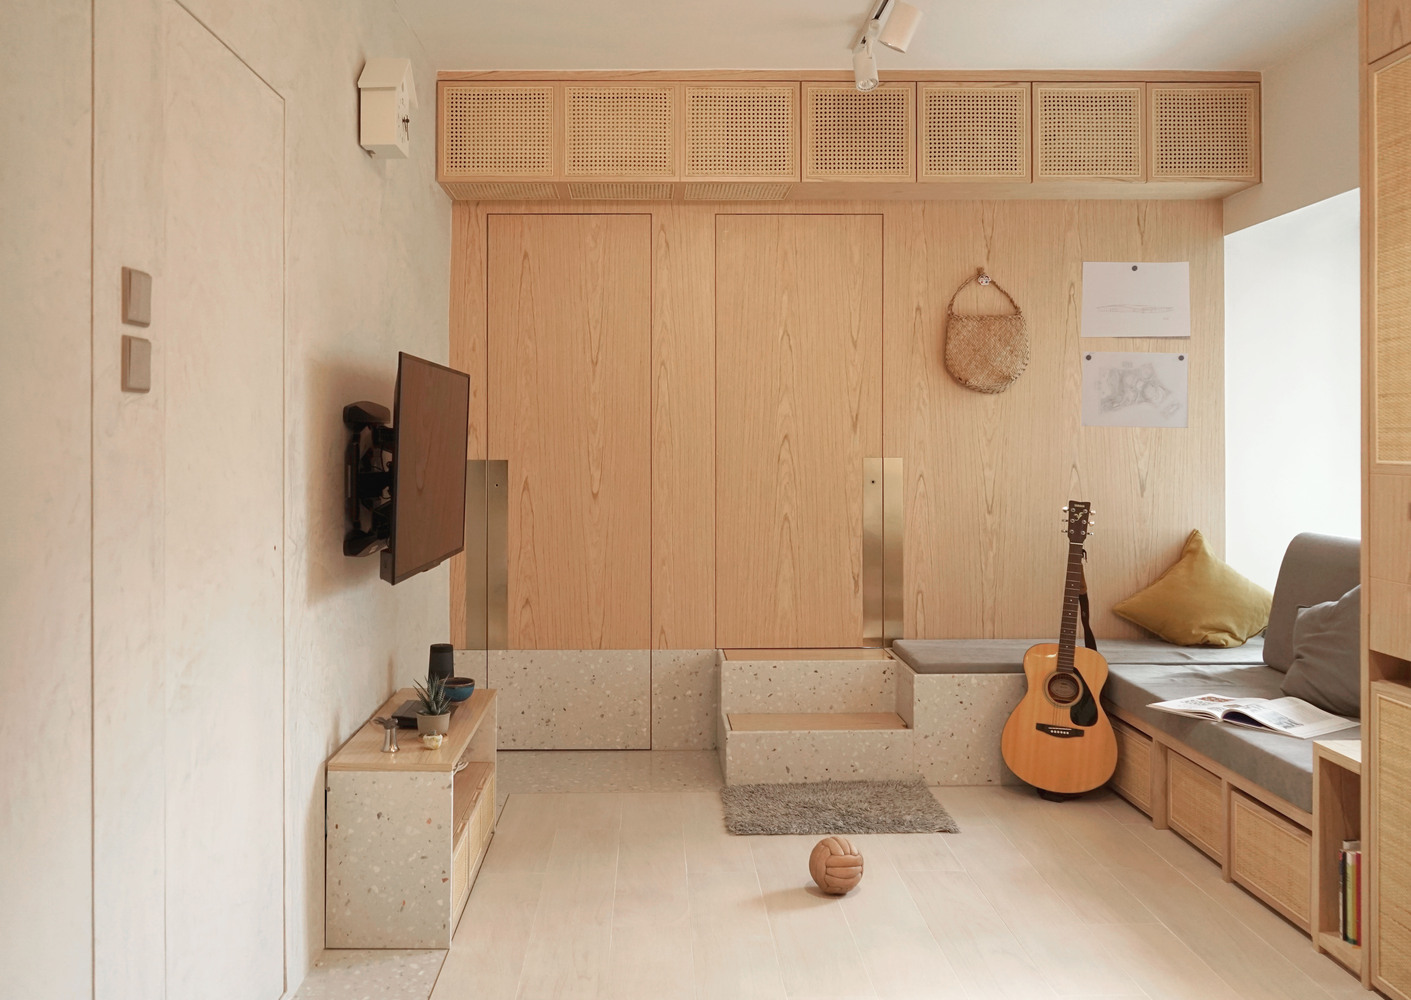 Apê de 40 m² utiliza armário funcional para solucionar falta de espaço